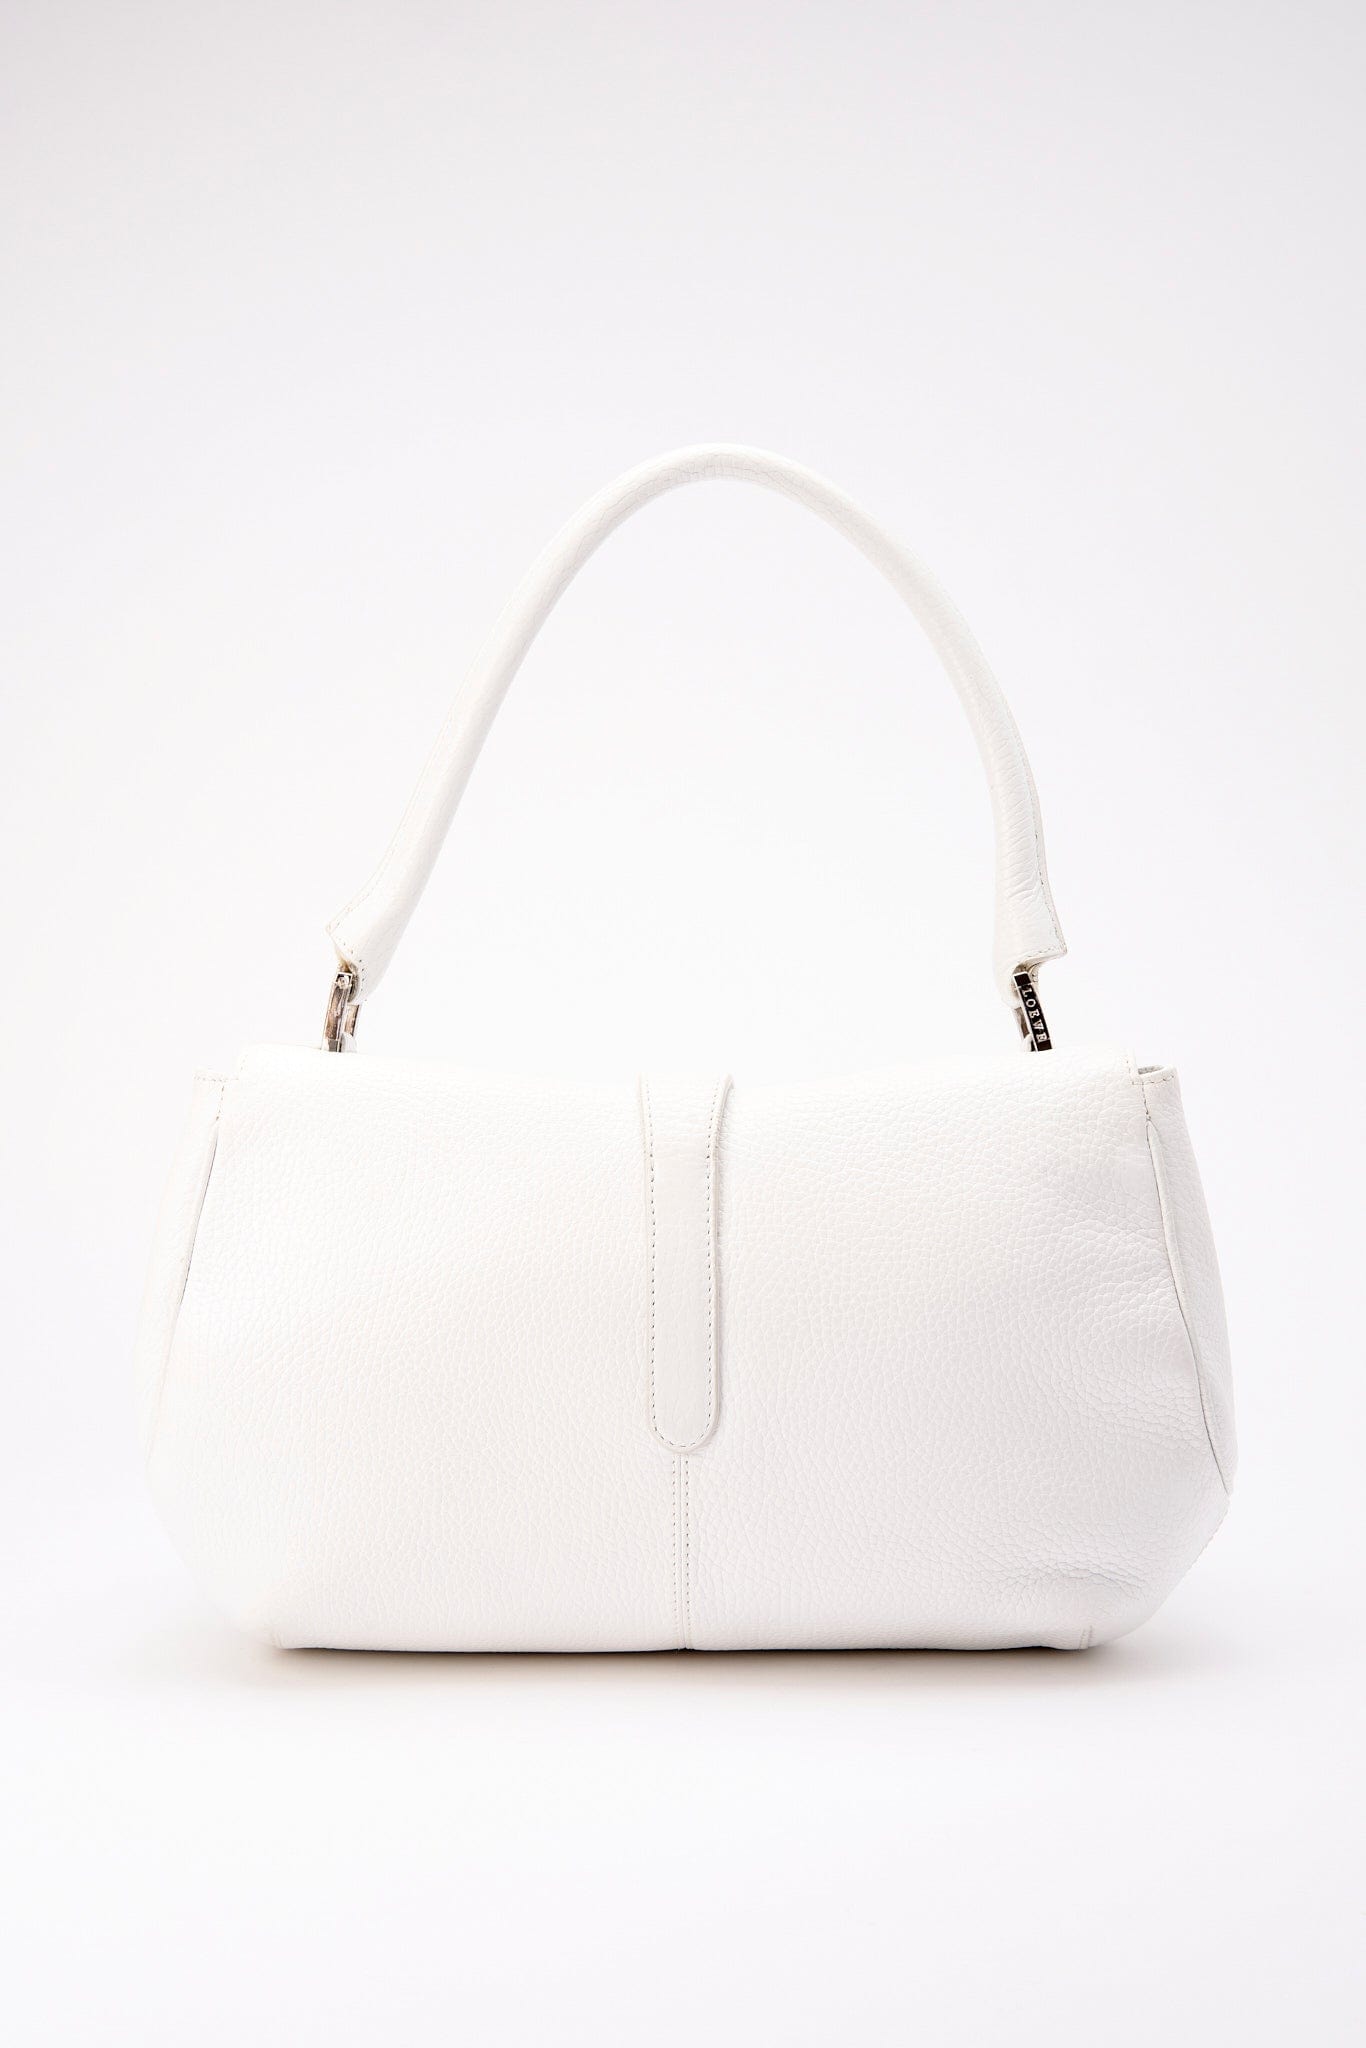 Vintage Loewe White Leather Shoulder Bag